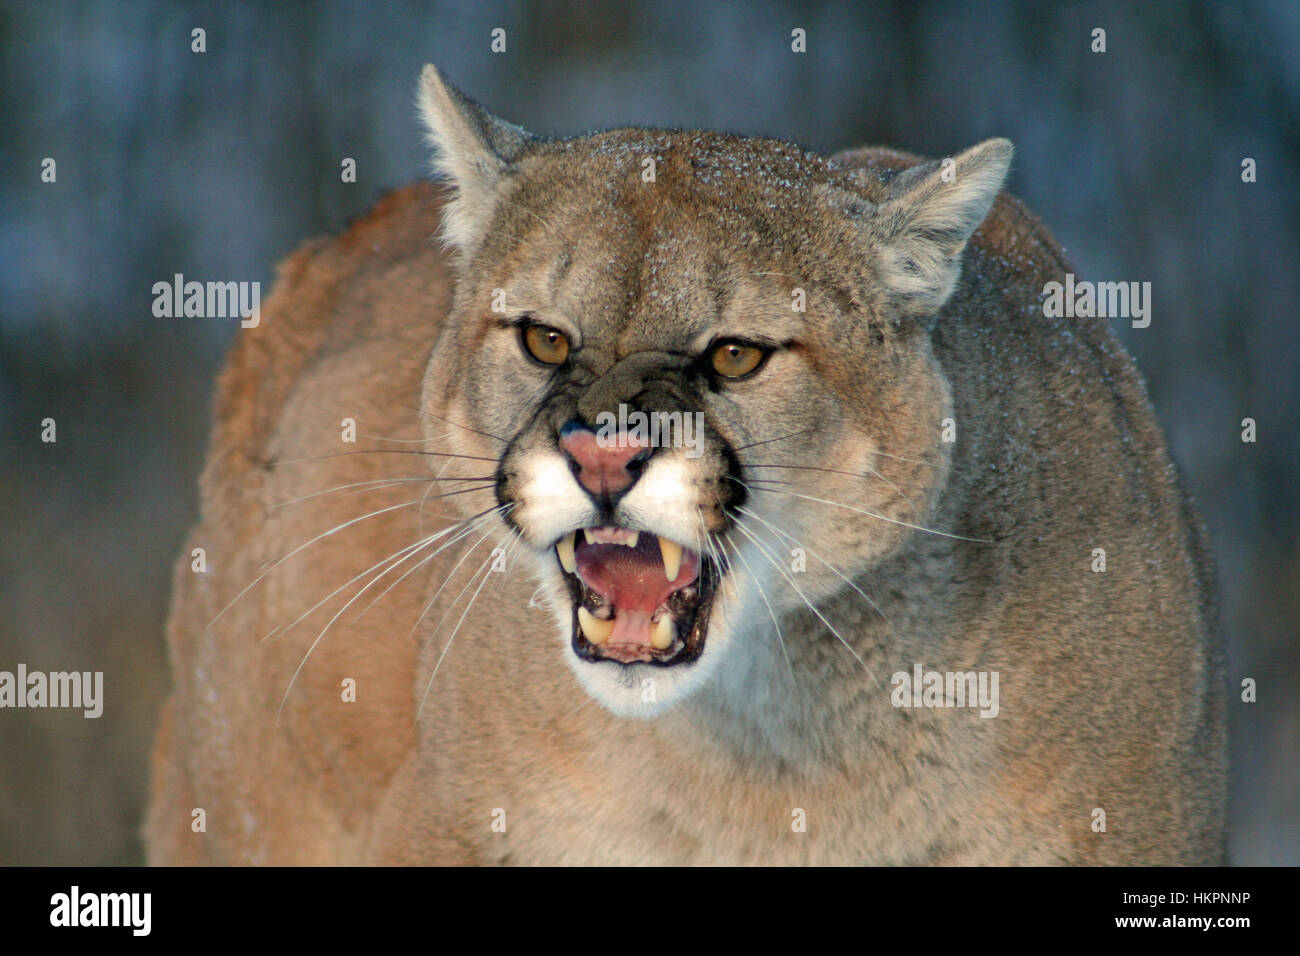 Gruñendo, enojado cougar con colmillos bared Foto de stock